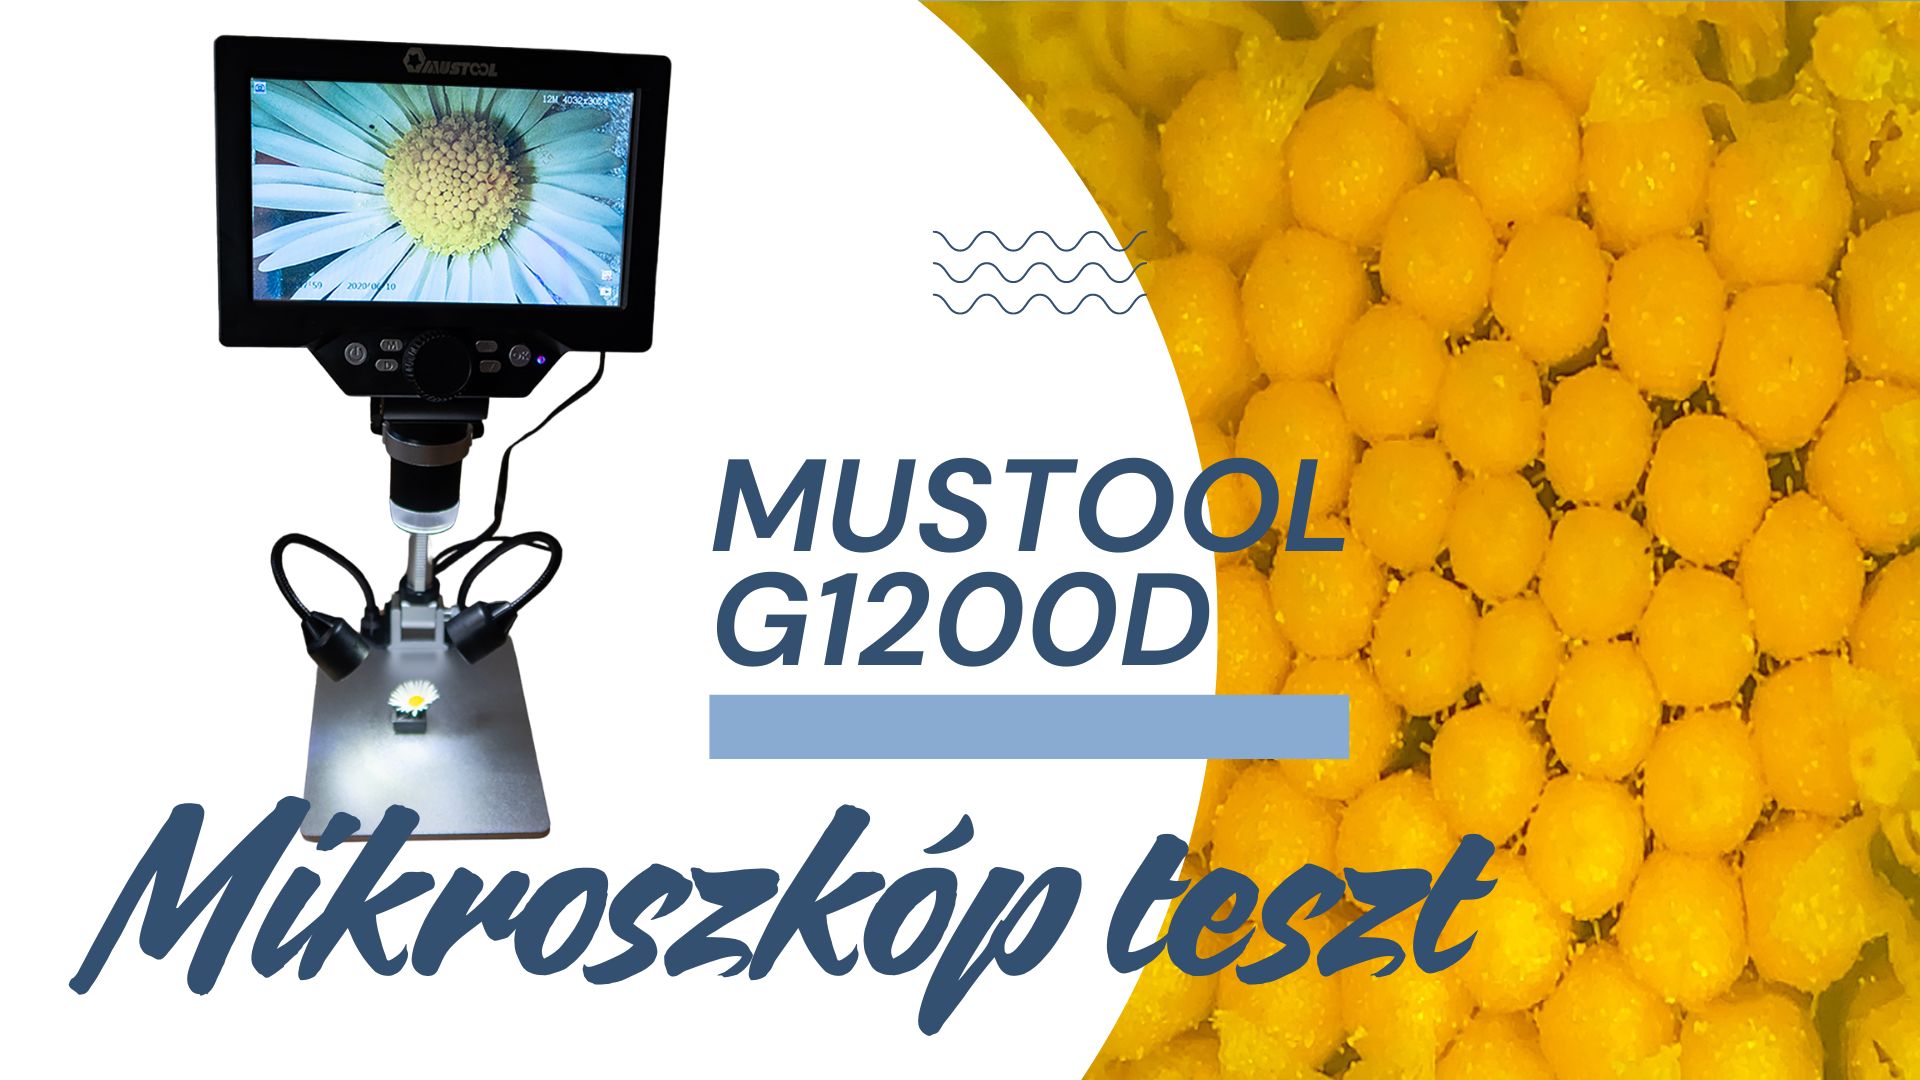 mustool_g1200d_mikroszkop_teszt.jpg